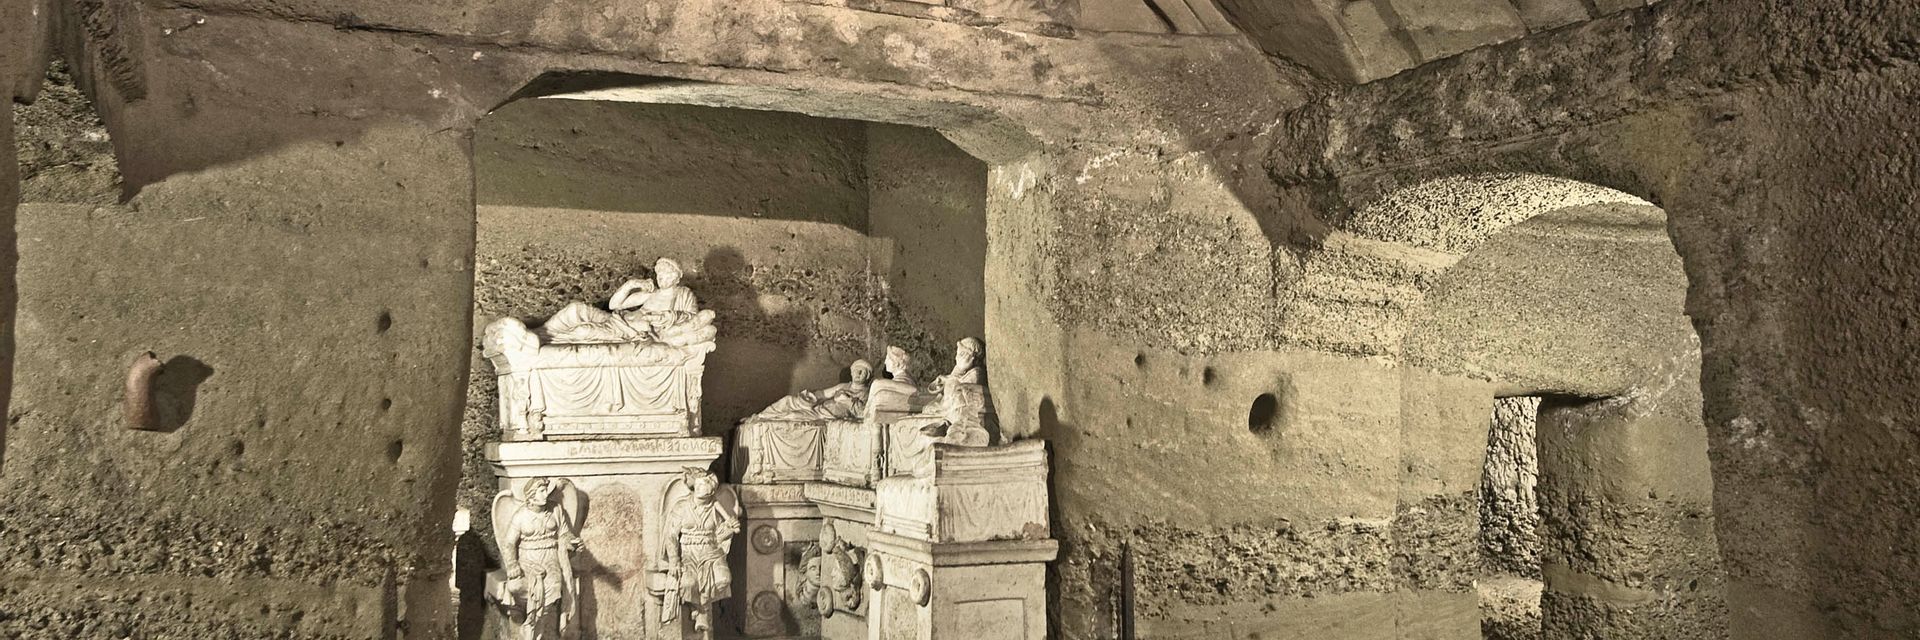 Hypogeum of the Volumni and Necropolis of Palazzone